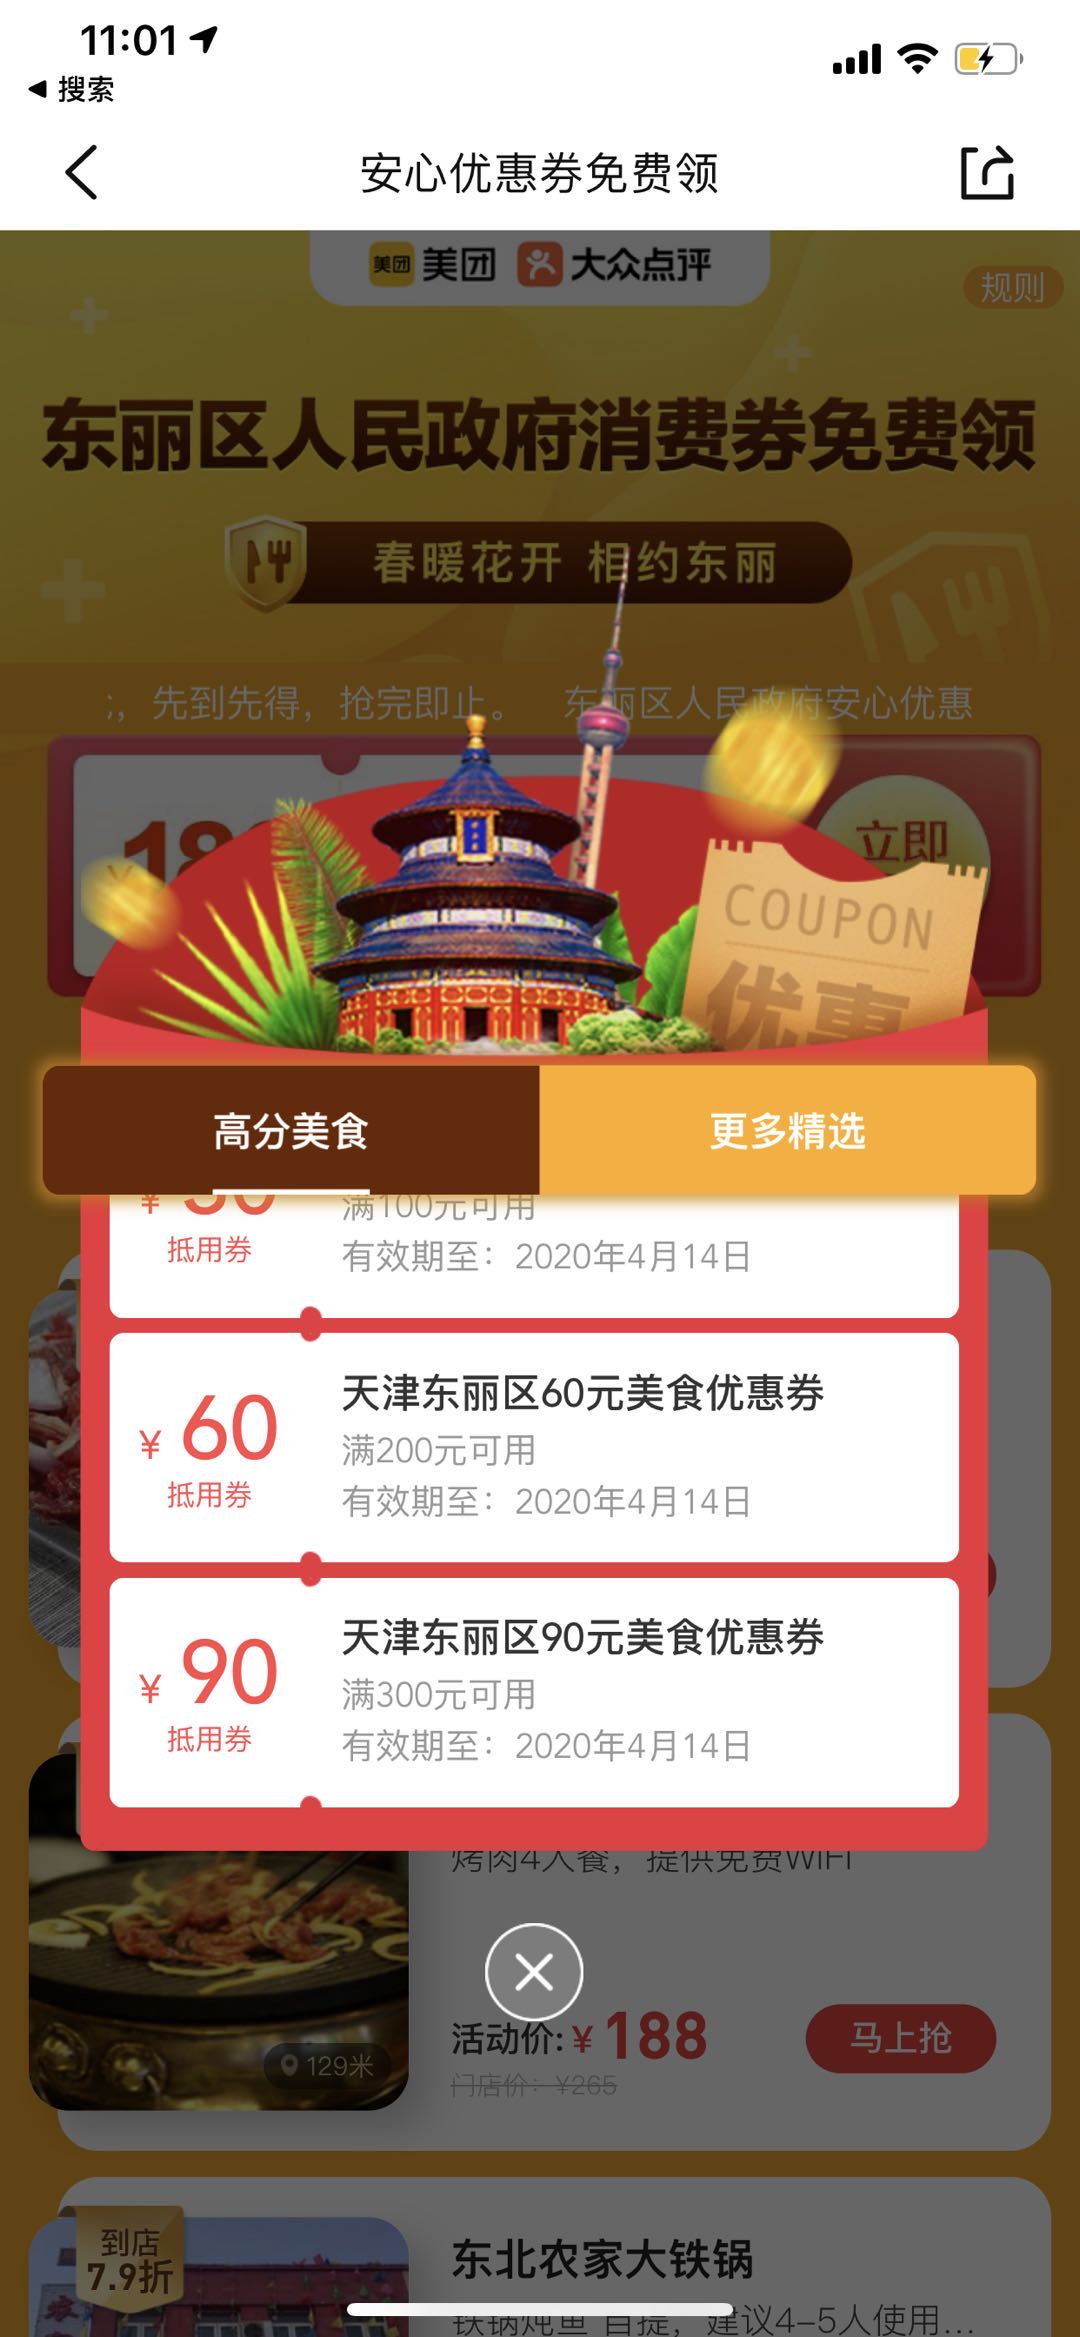 线报-「大众点评」坐标天津app首页-政府发放消费券-惠小助(52huixz.com)